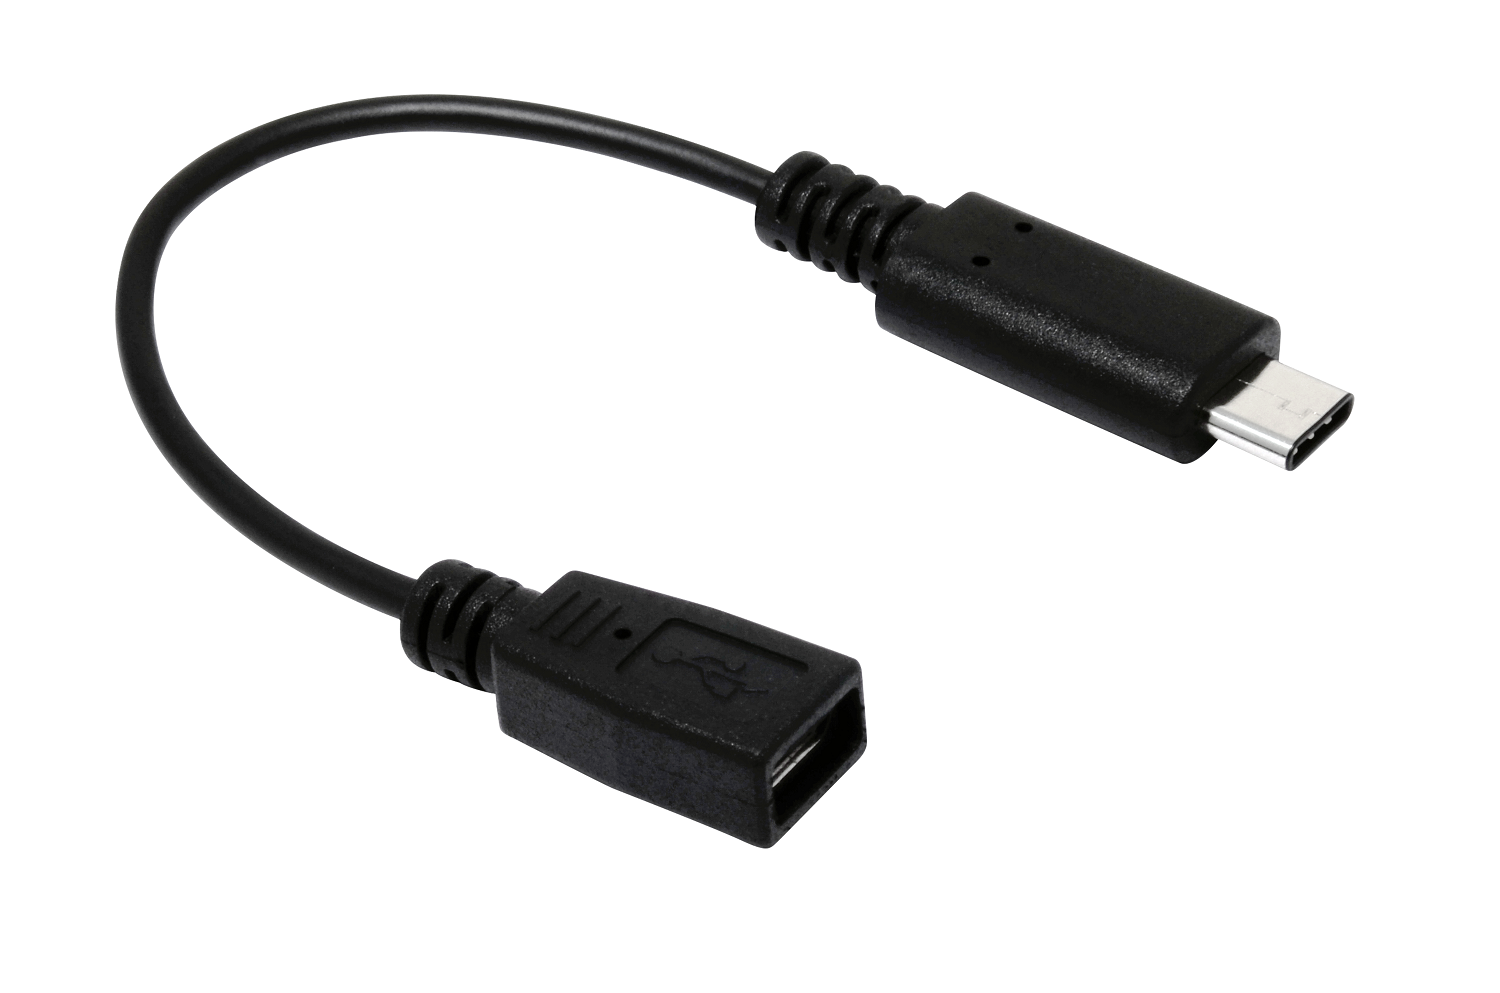 392 USB Type-C to USB2